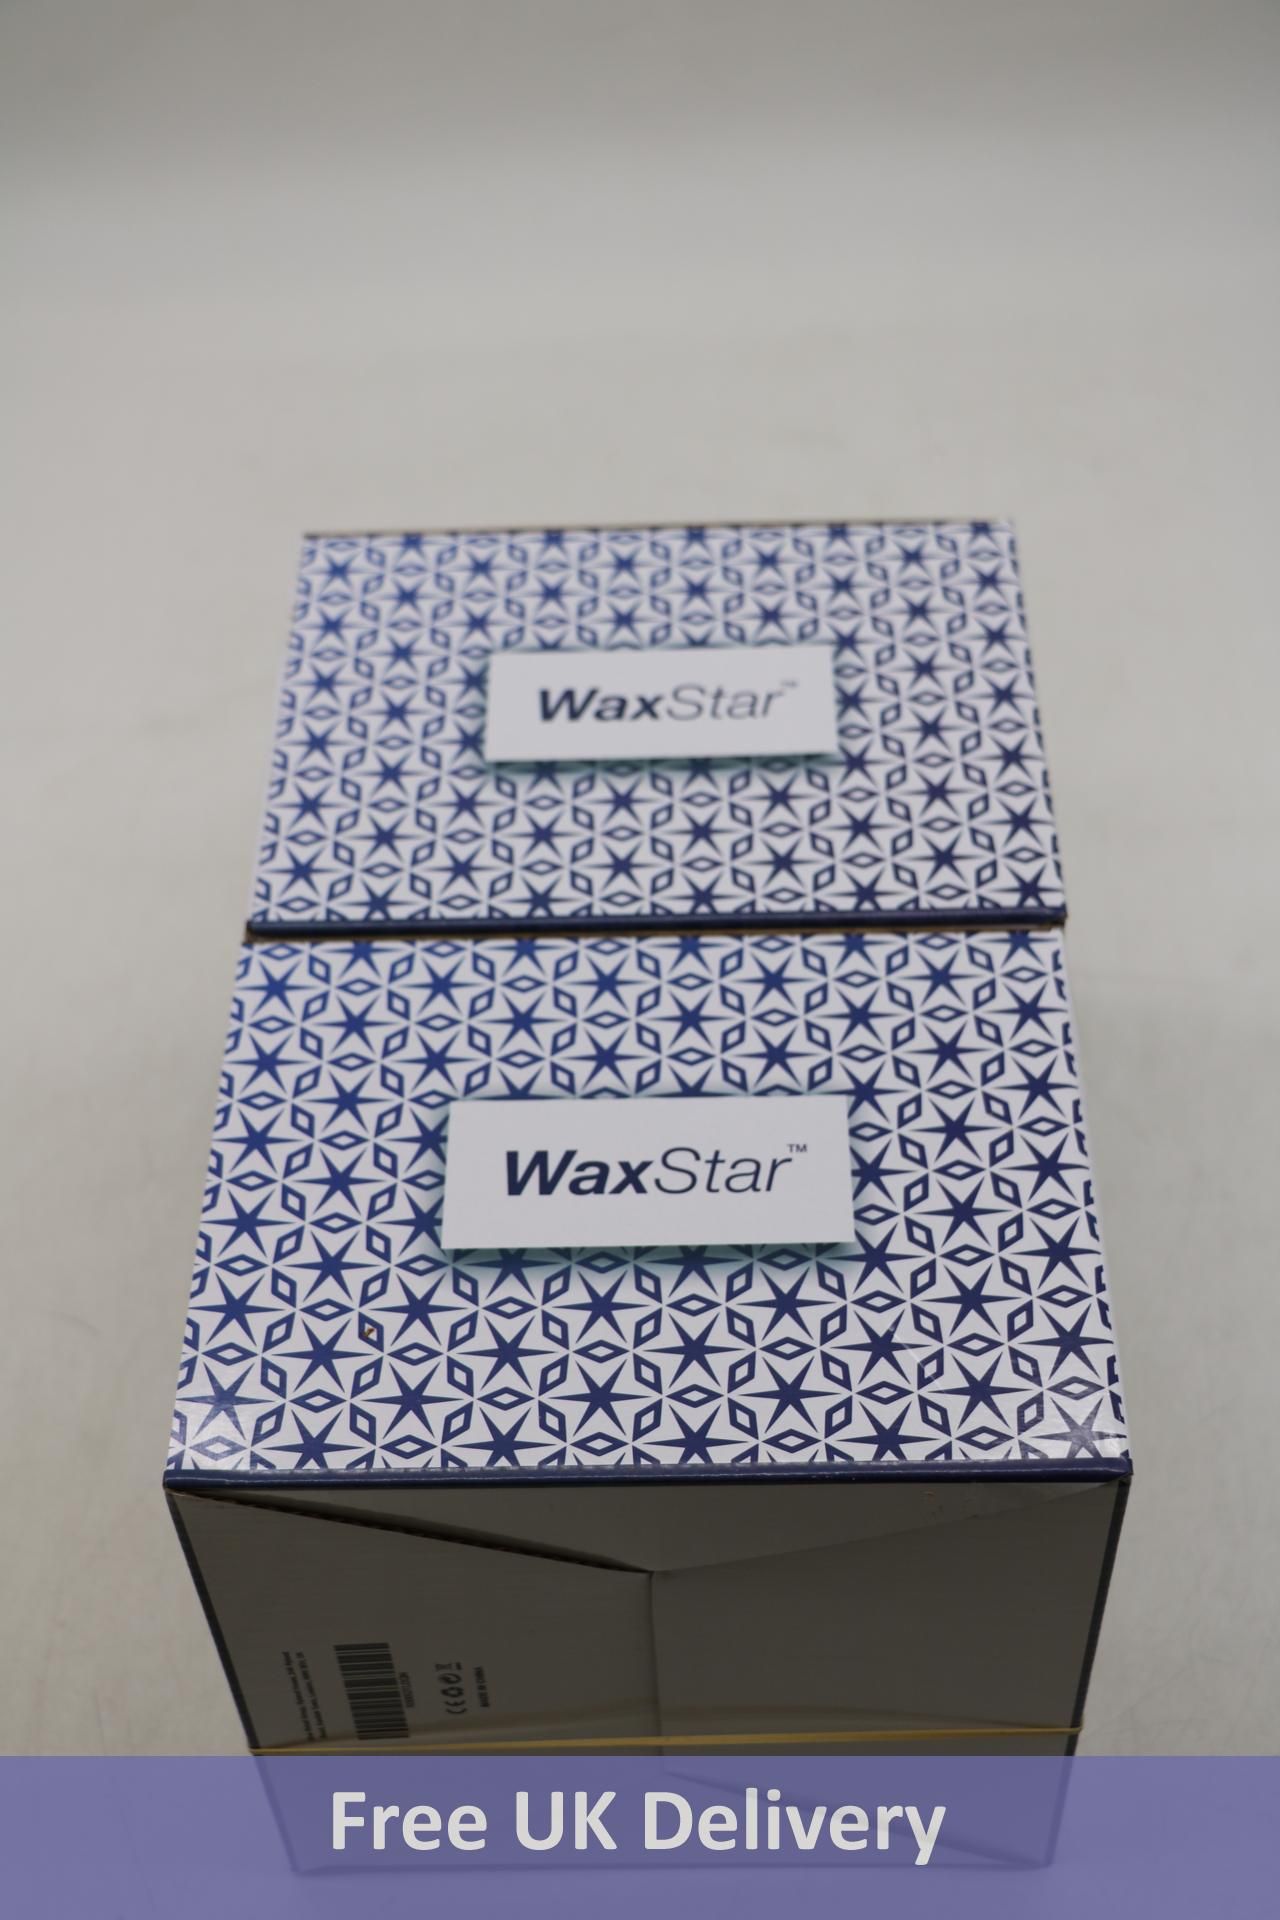 Six Vax Star Professional Wax Warmers